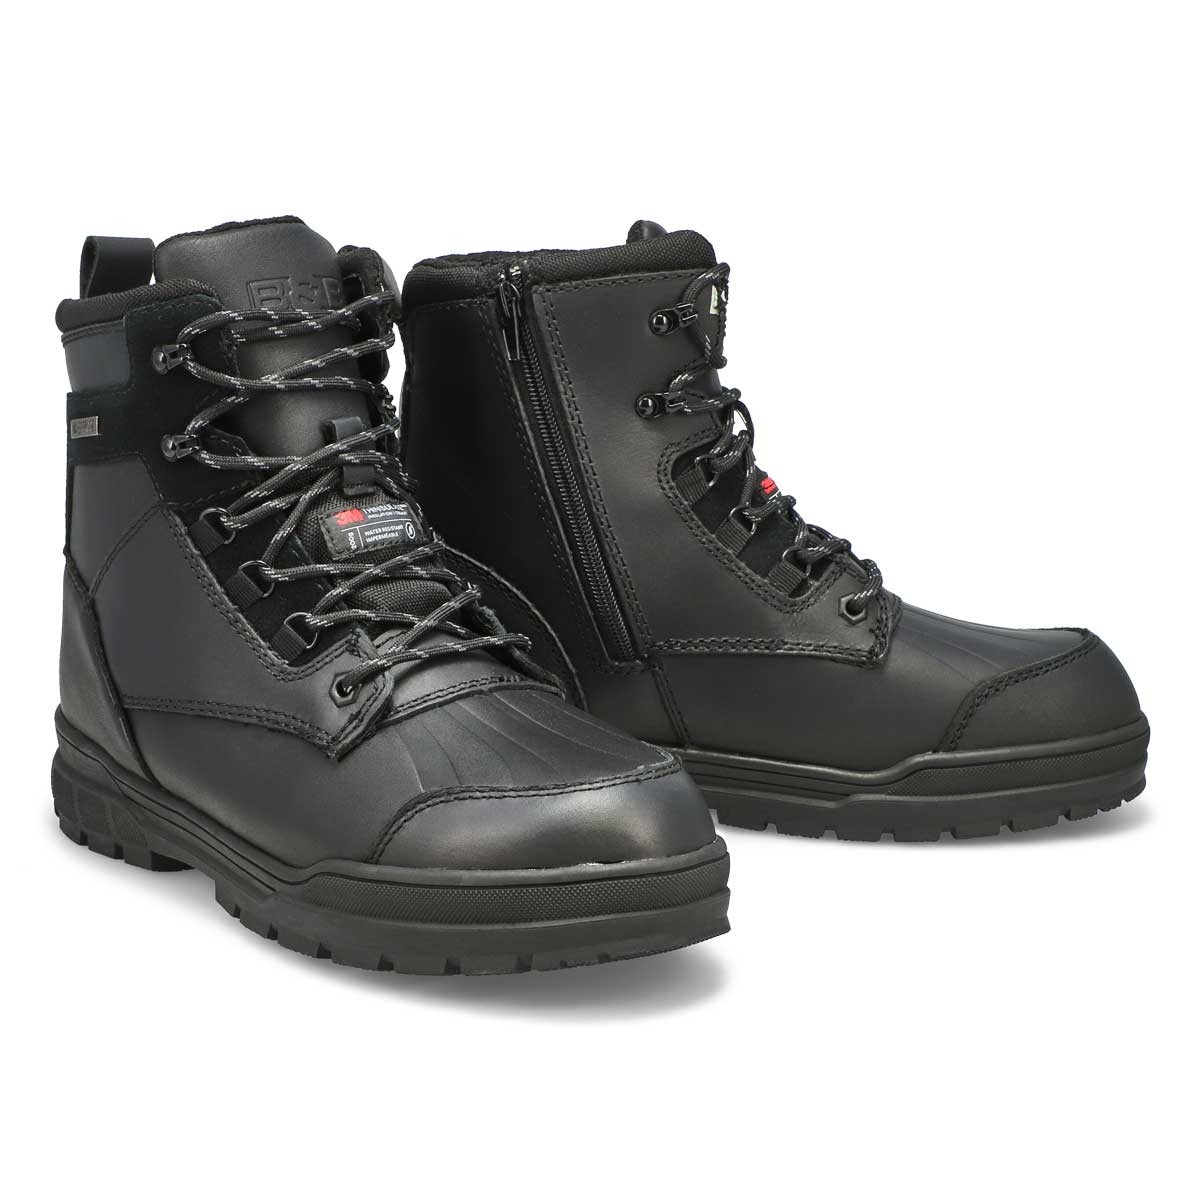 Men's Isaac Waterproof Winter Boot - Black